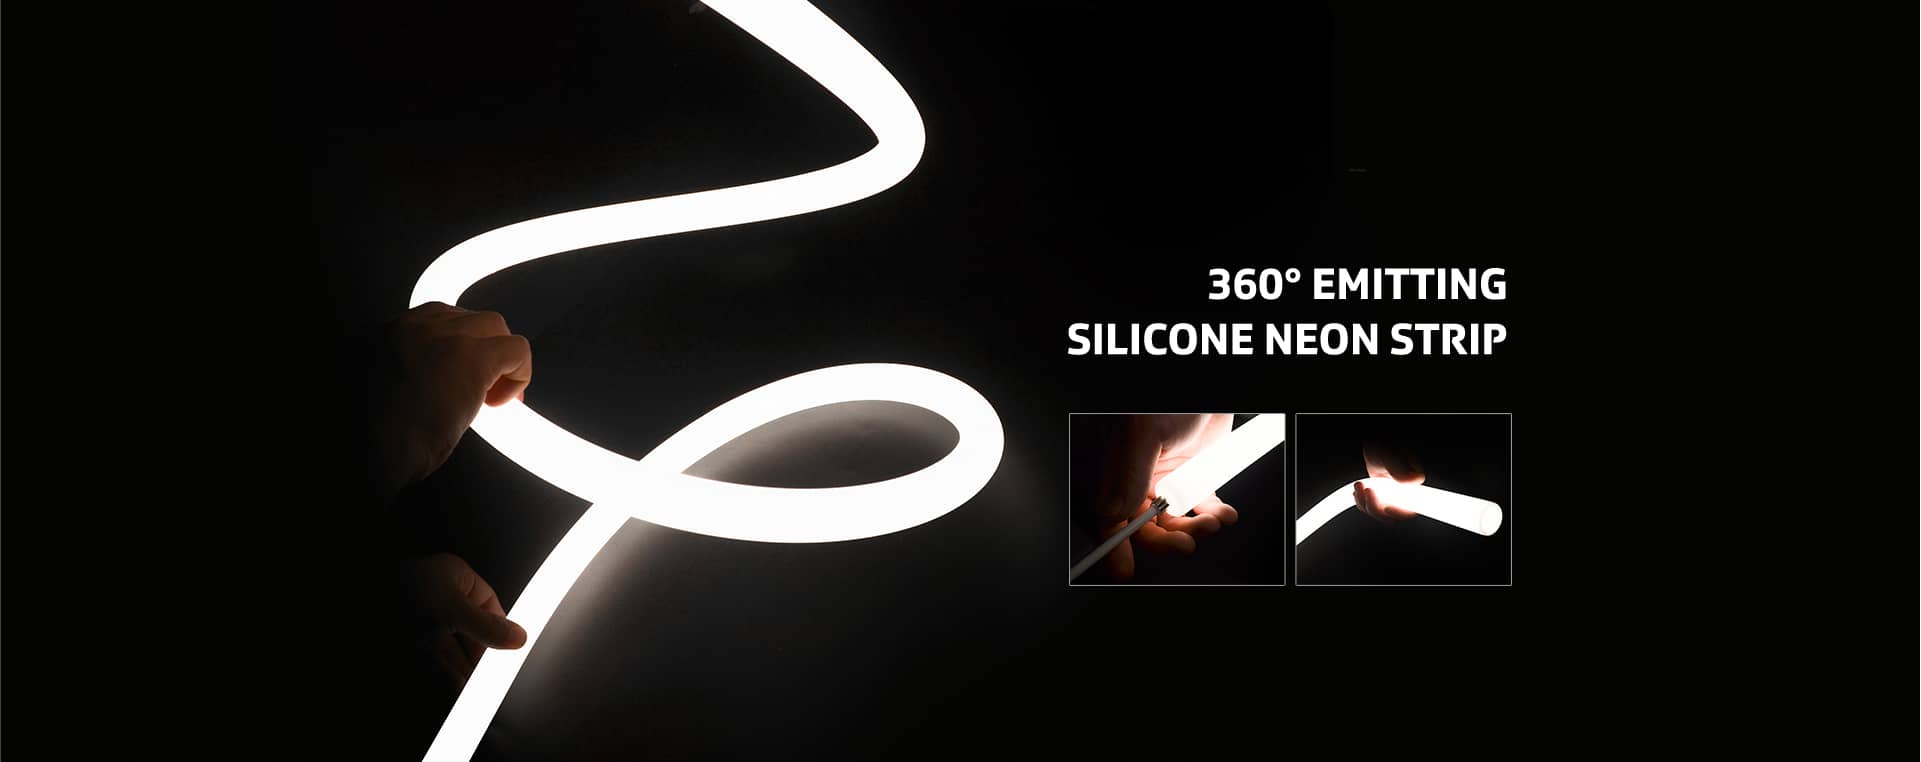 Silicone Neon Strip